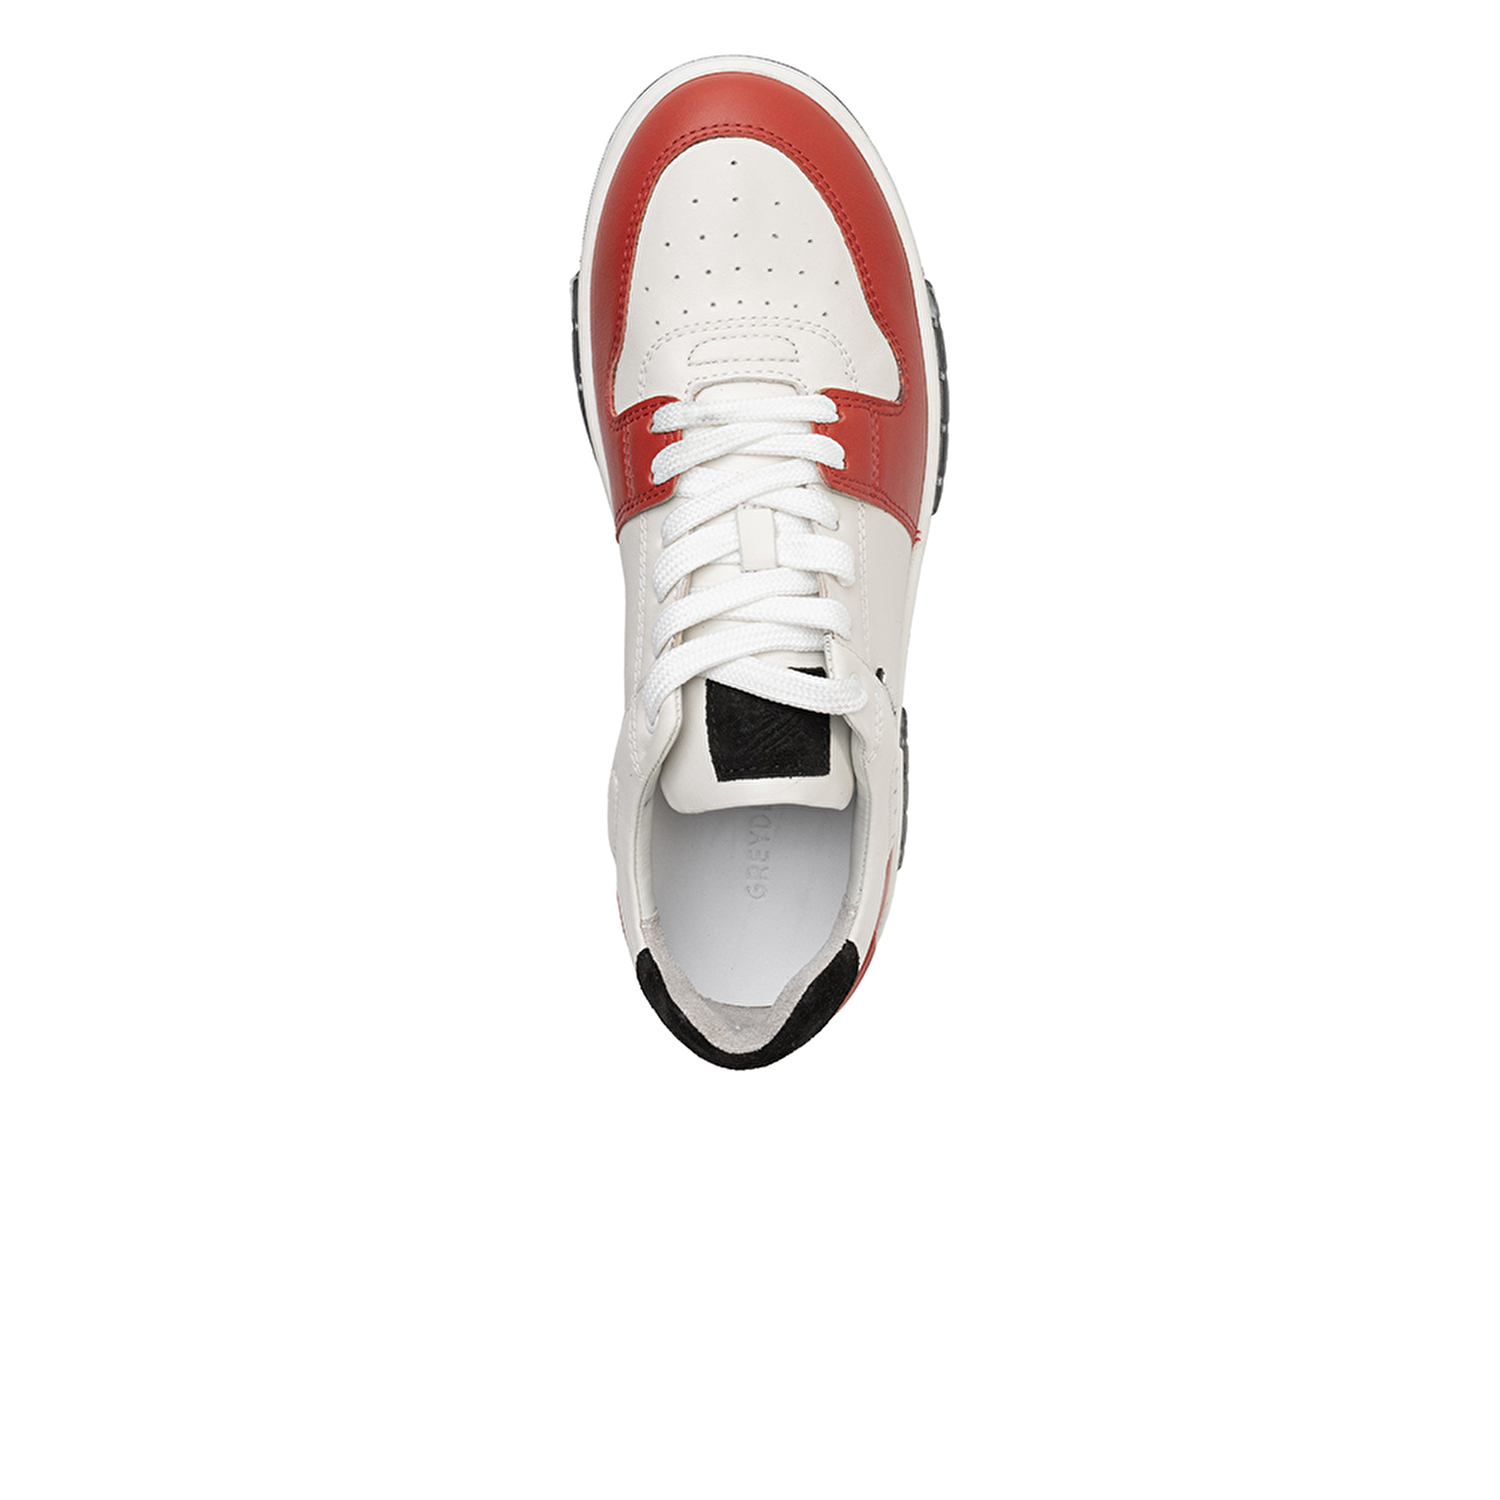 Kadın Beyaz Kırmızı Hakiki Deri Sneaker Ayakkabı 3K2SA33021-3